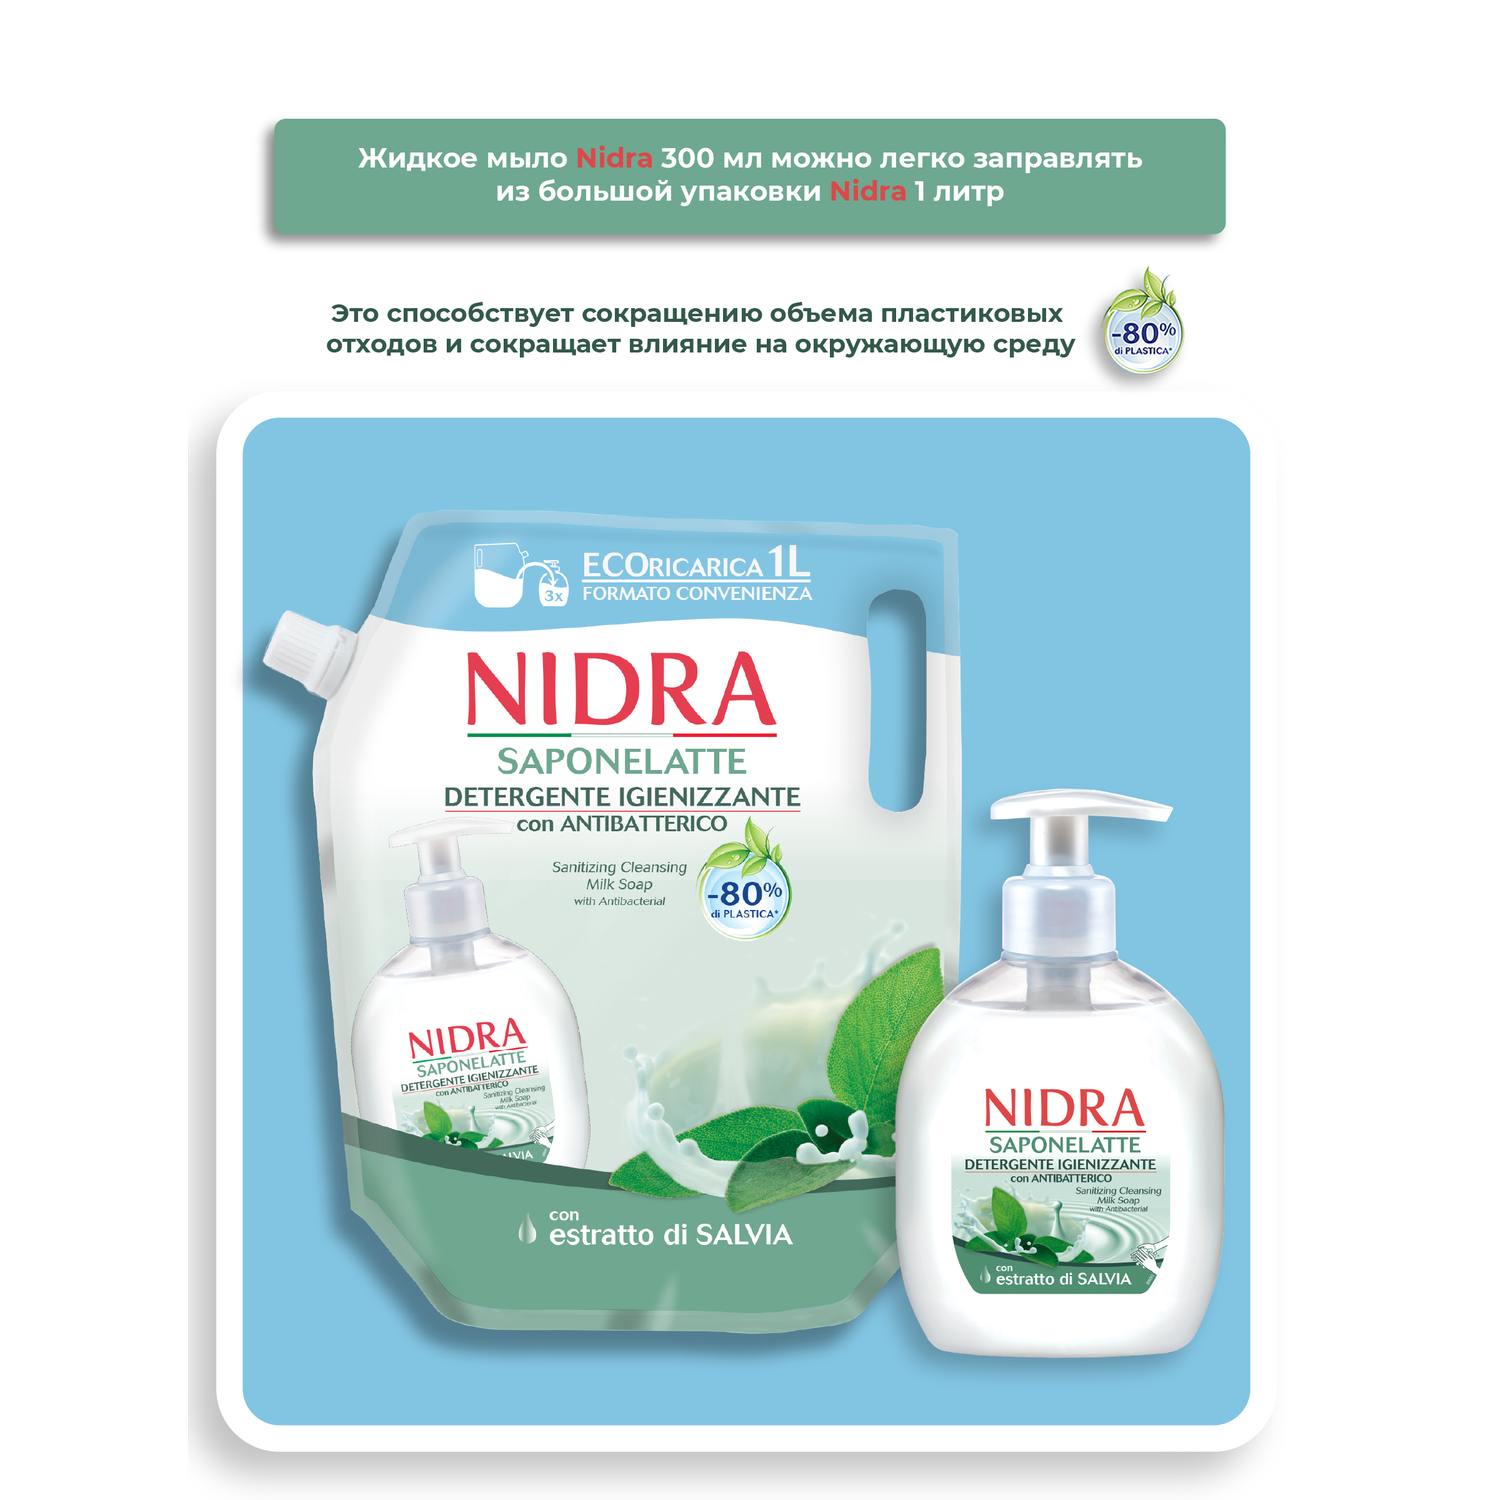 Жидкое мыло-молочко Nidra очищающее Антибактериальное 300 мл - фото 3